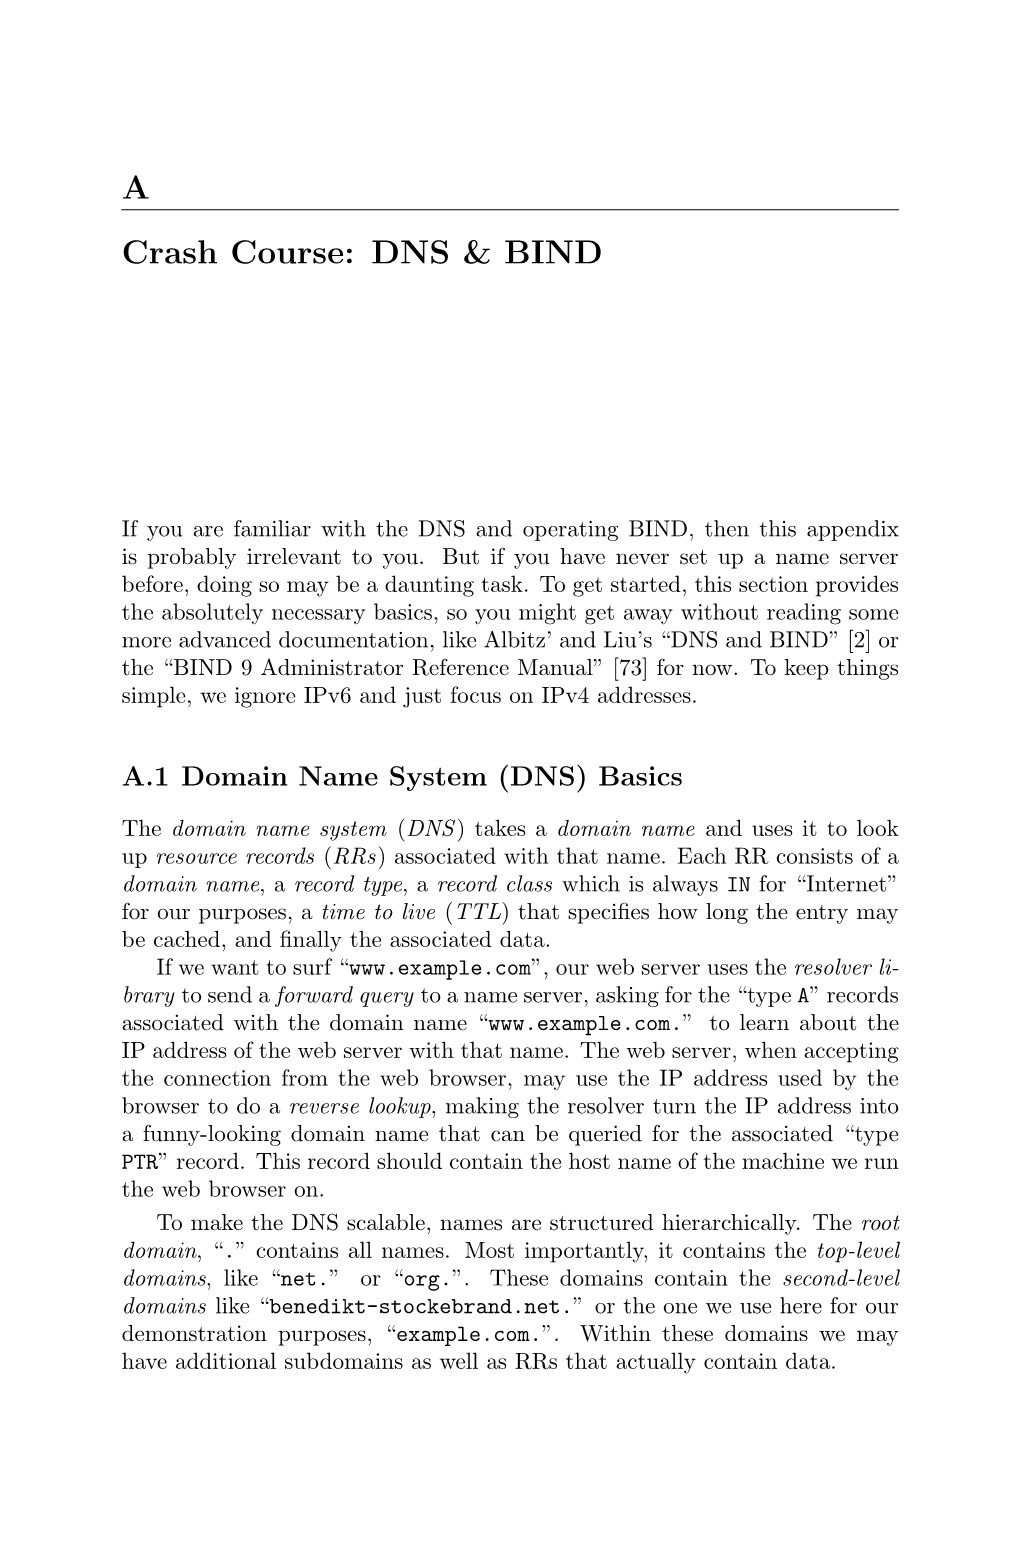 A Crash Course: DNS & BIND